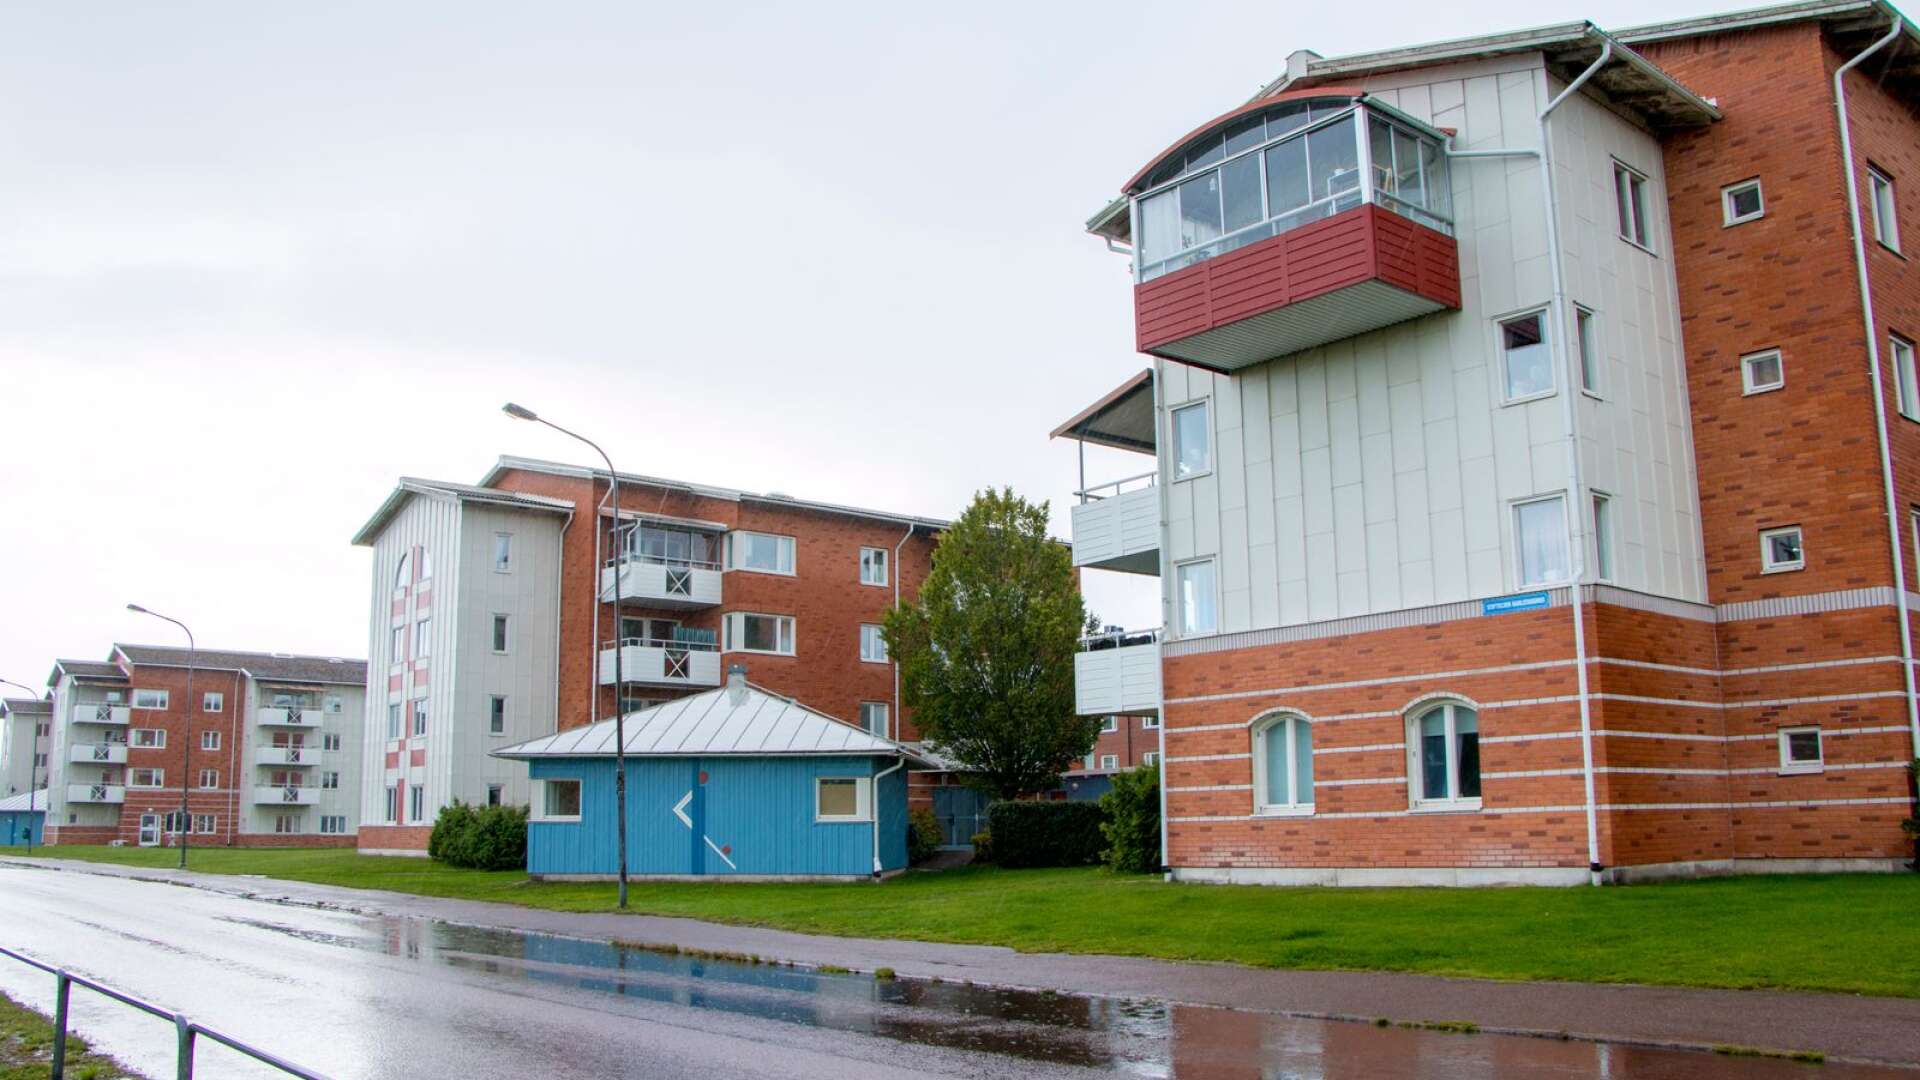 Flerbostadshusen längs Karmgatan på Våxnäs har varierade fasader både när det gäller utformning och materialval. Sadeltaken gjorde ett återtåg på flerbostadshusen under den här tiden.